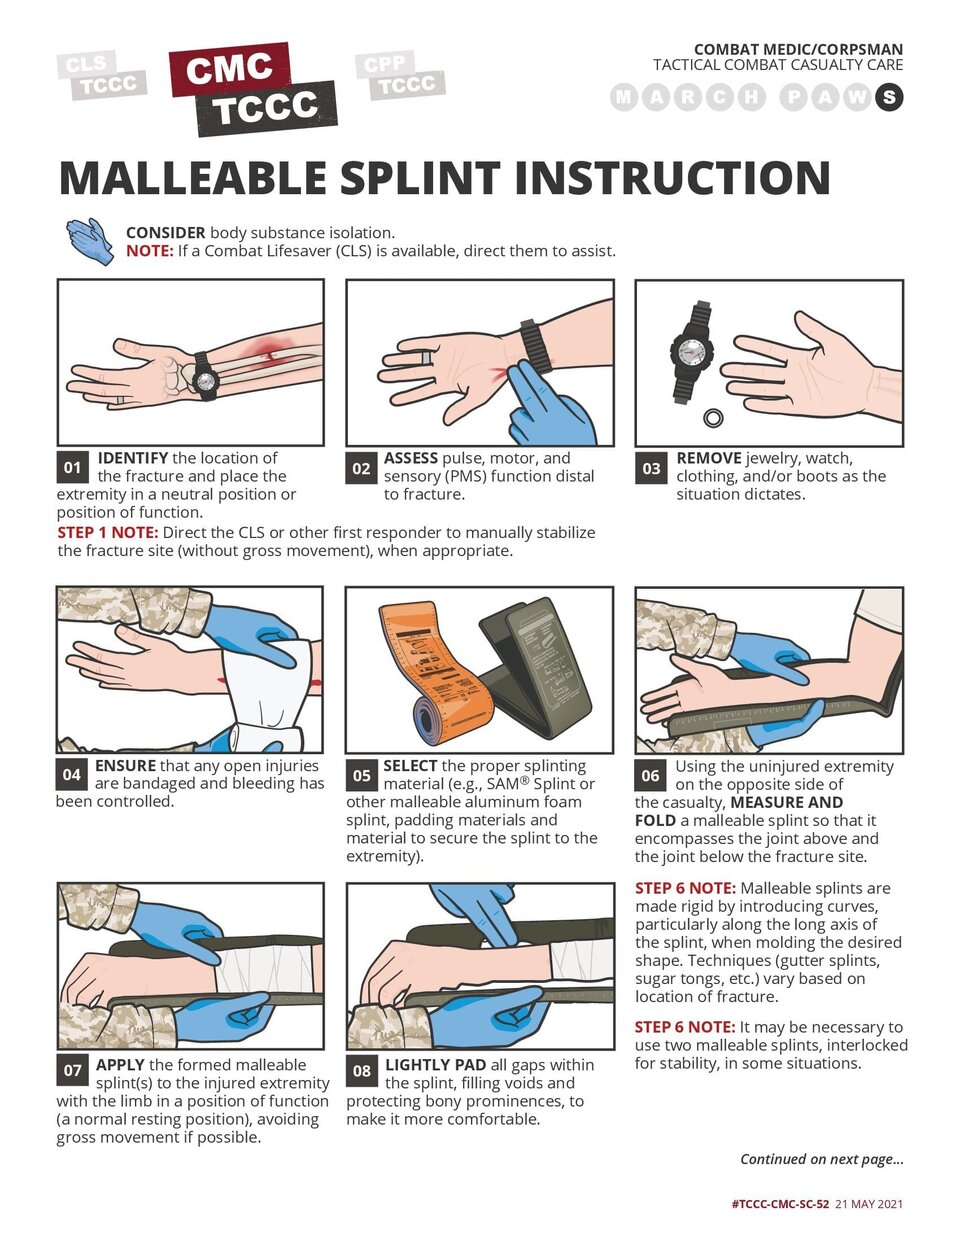 Malleable Splint Instruction